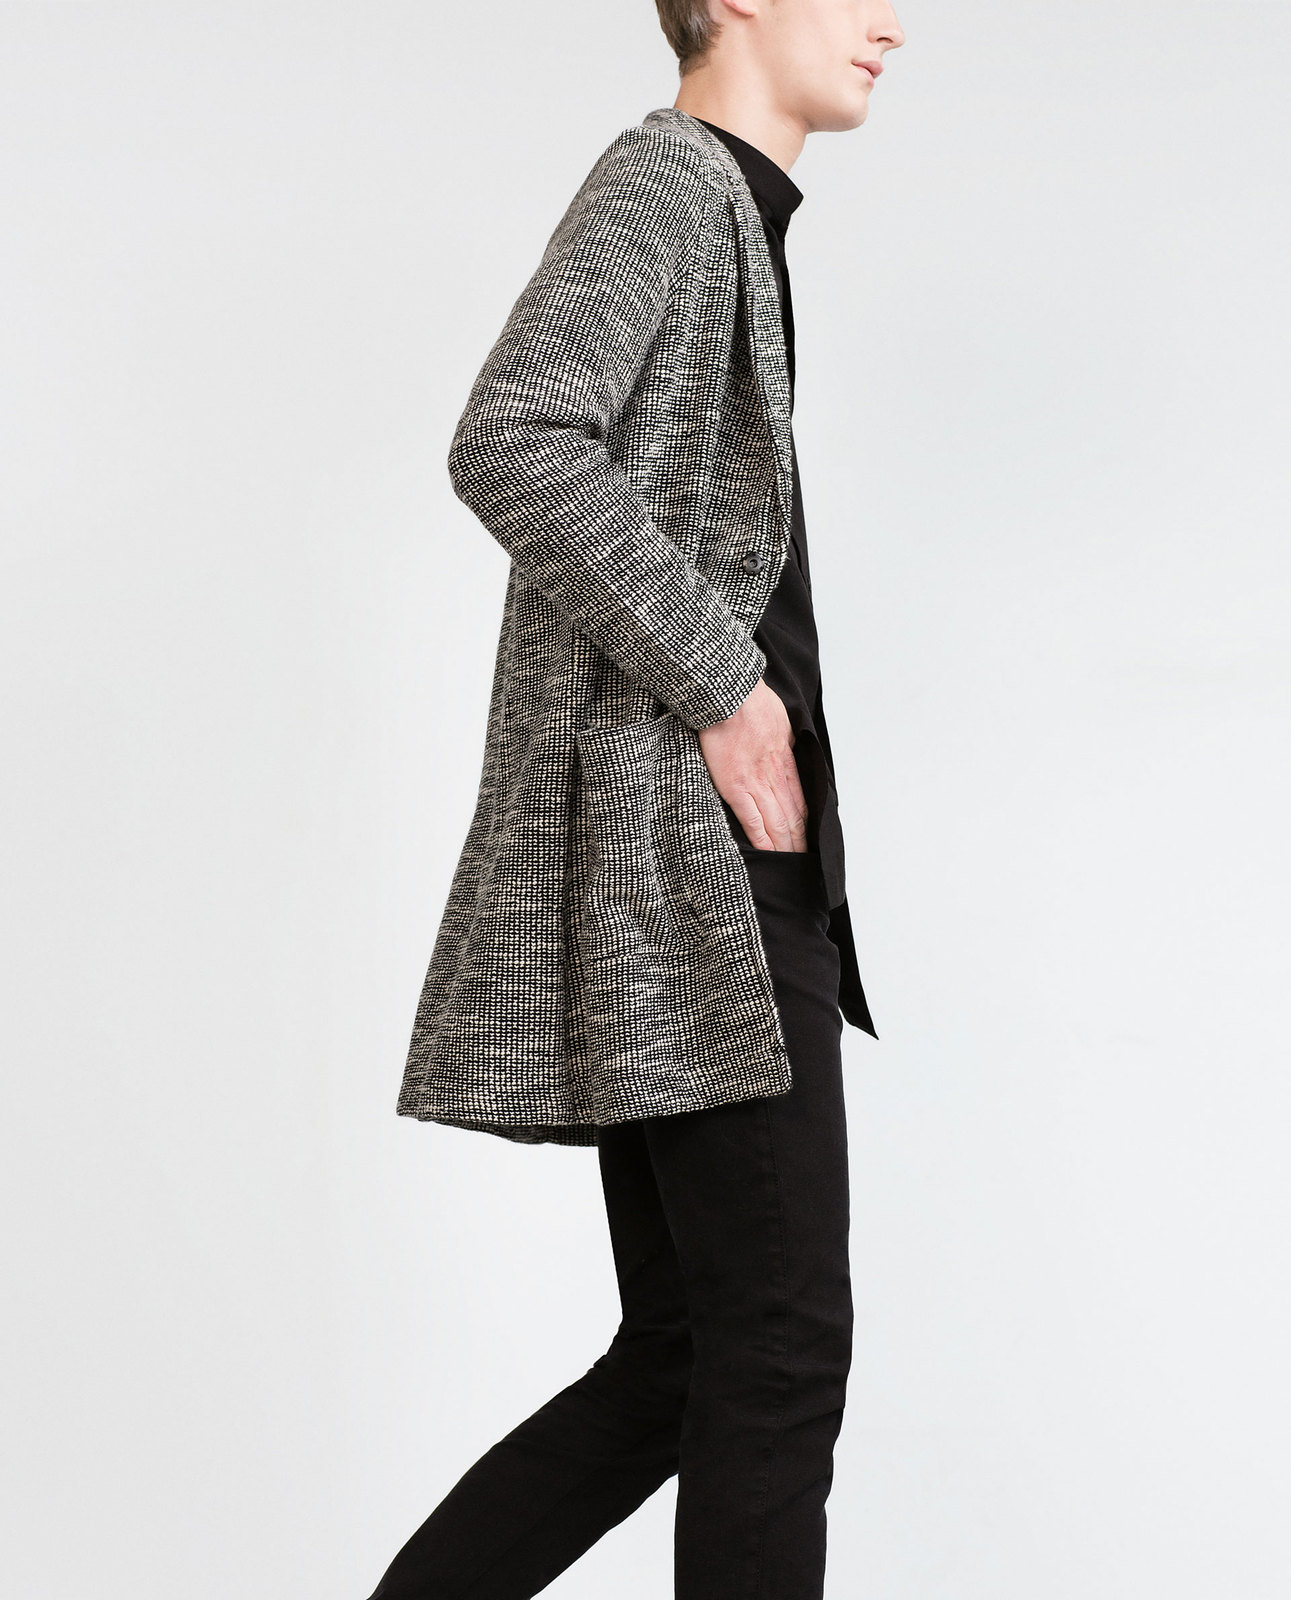 Zara szürke férfi kabát pulóver 2015.10.16 fotója